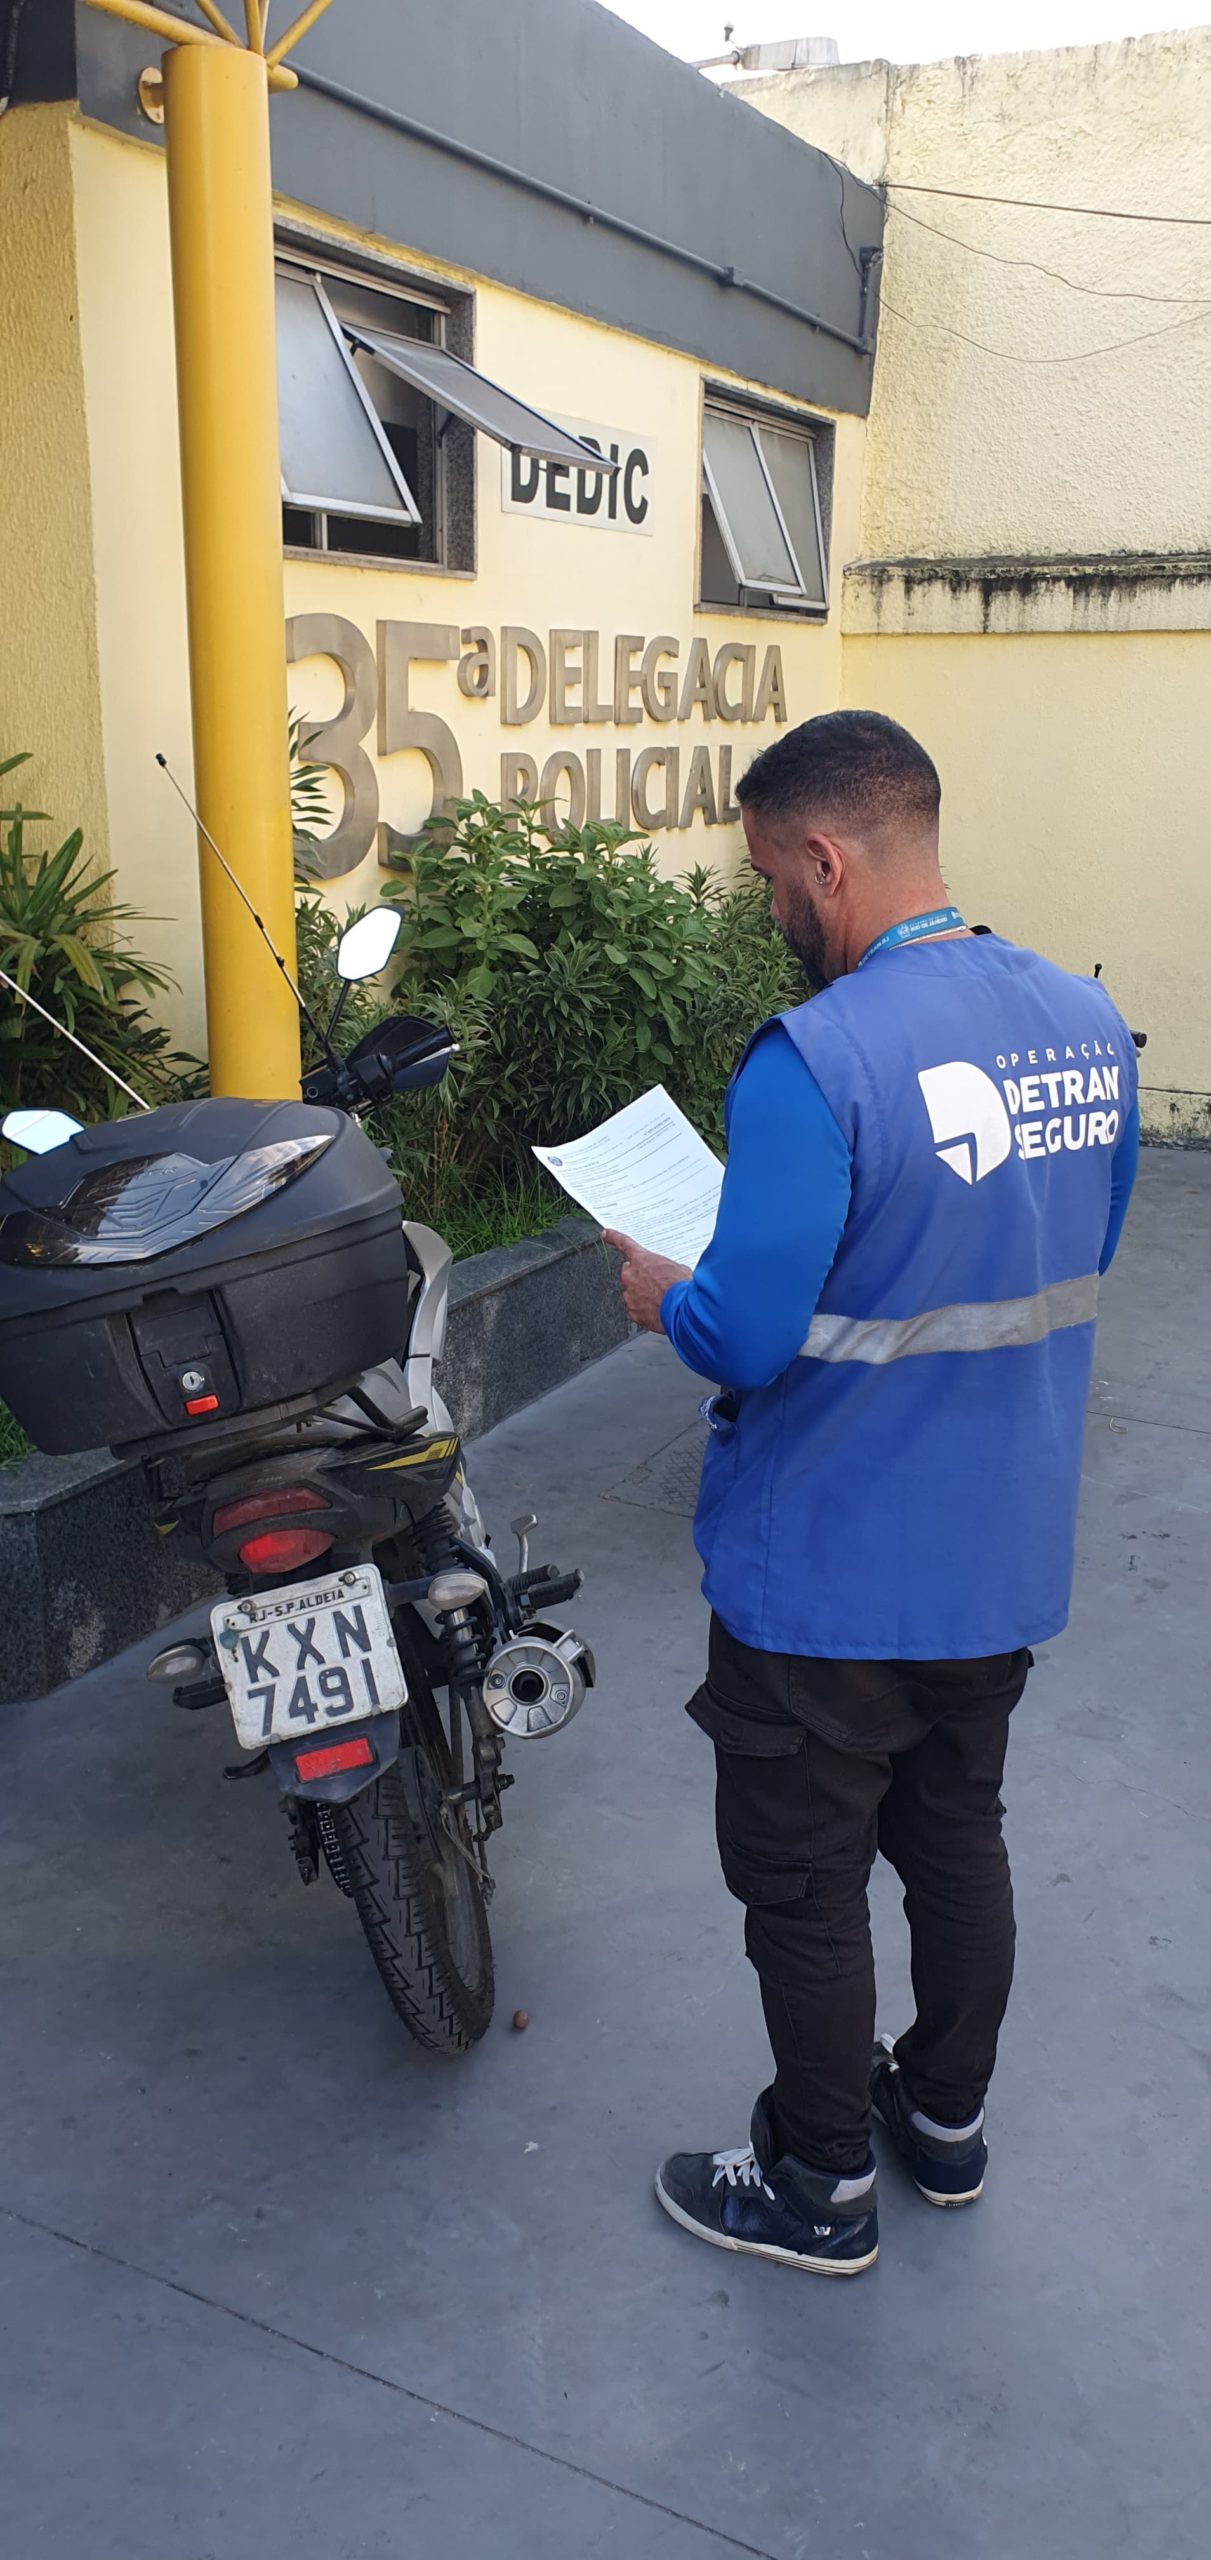 Operação 'Siga Legal' apreende 15 motocicletas irregulares desde o início de fevereiro (Foto: Divulgação)